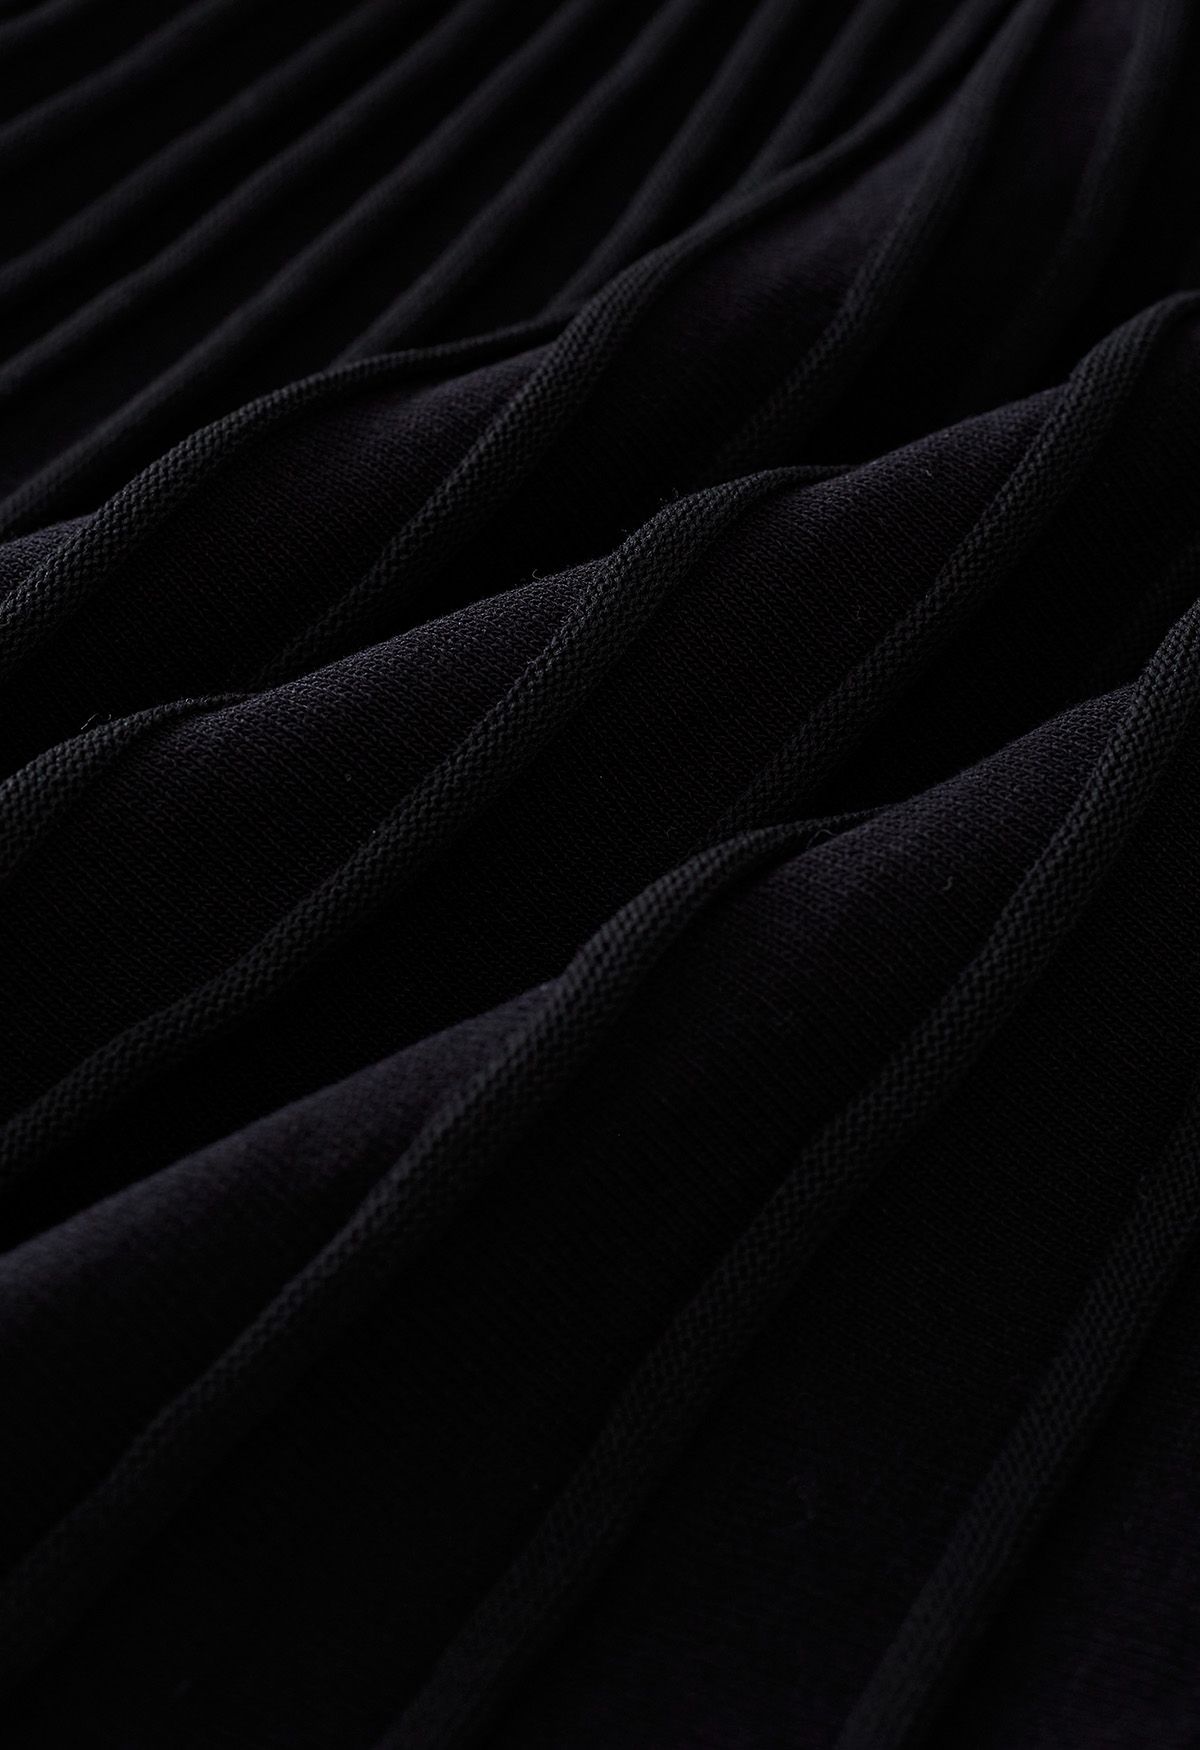 Vestido de malha plissado de cor contrastante com cinto em preto